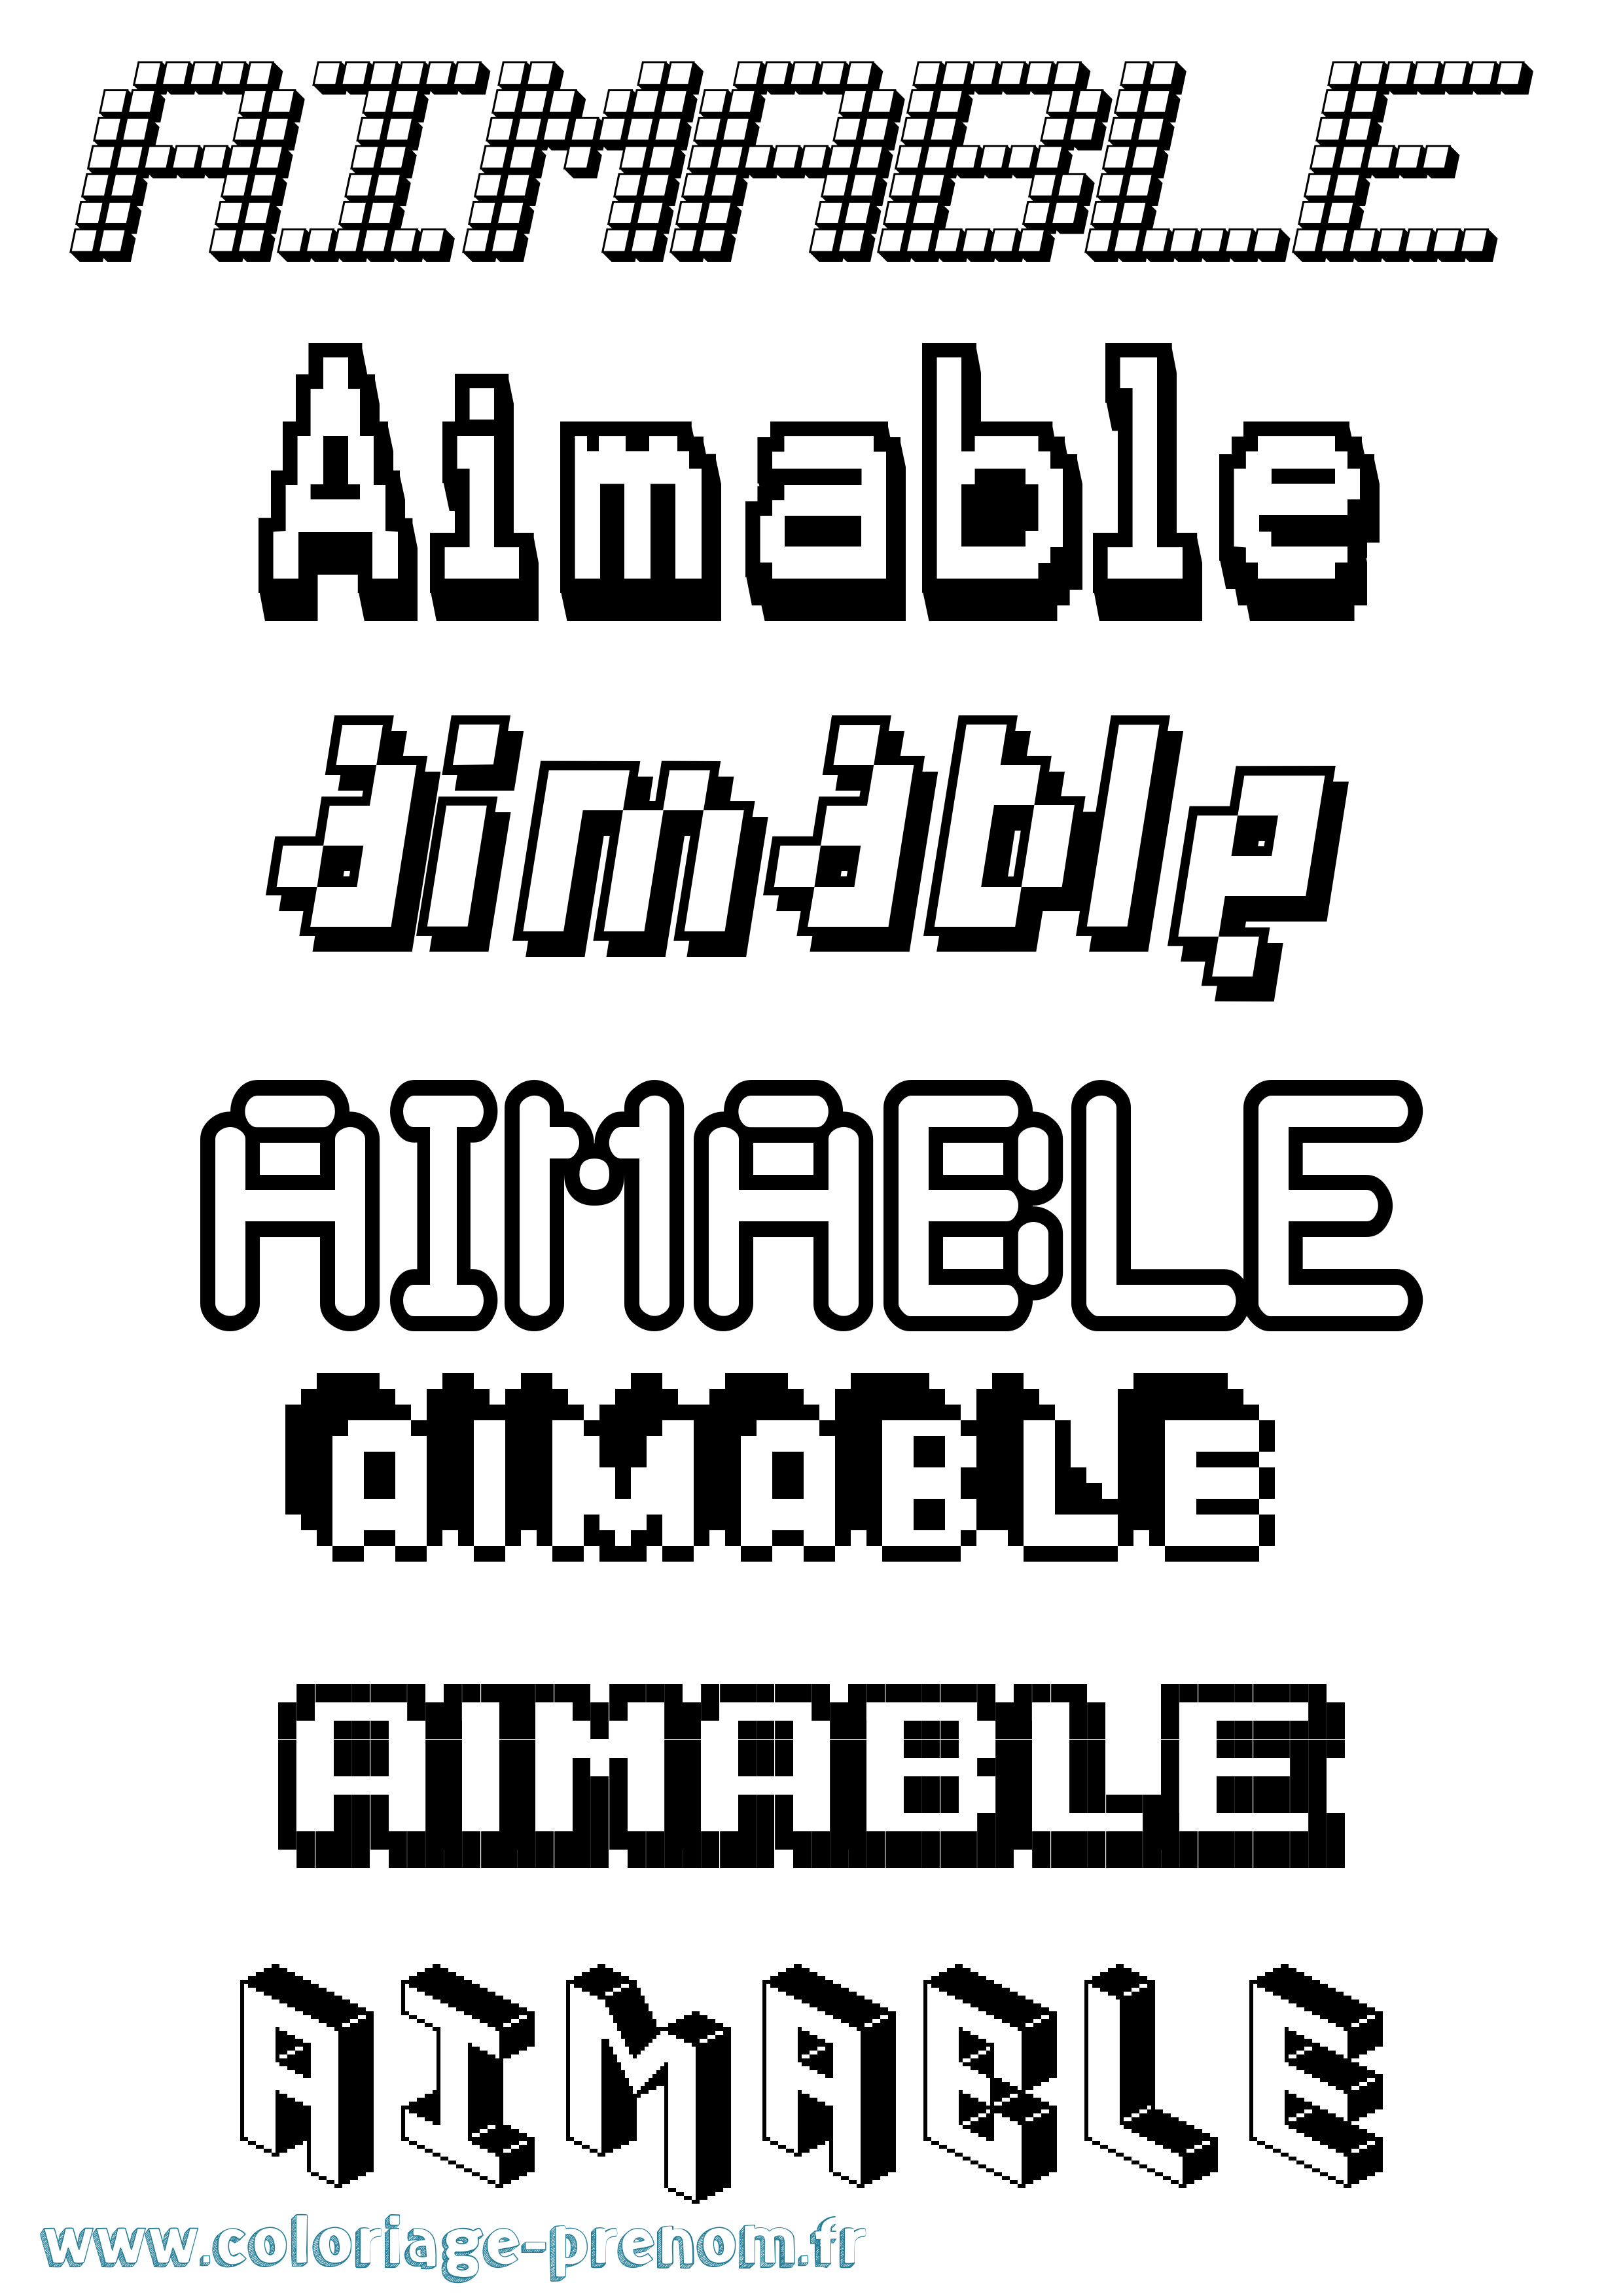 Coloriage prénom Aimable Pixel